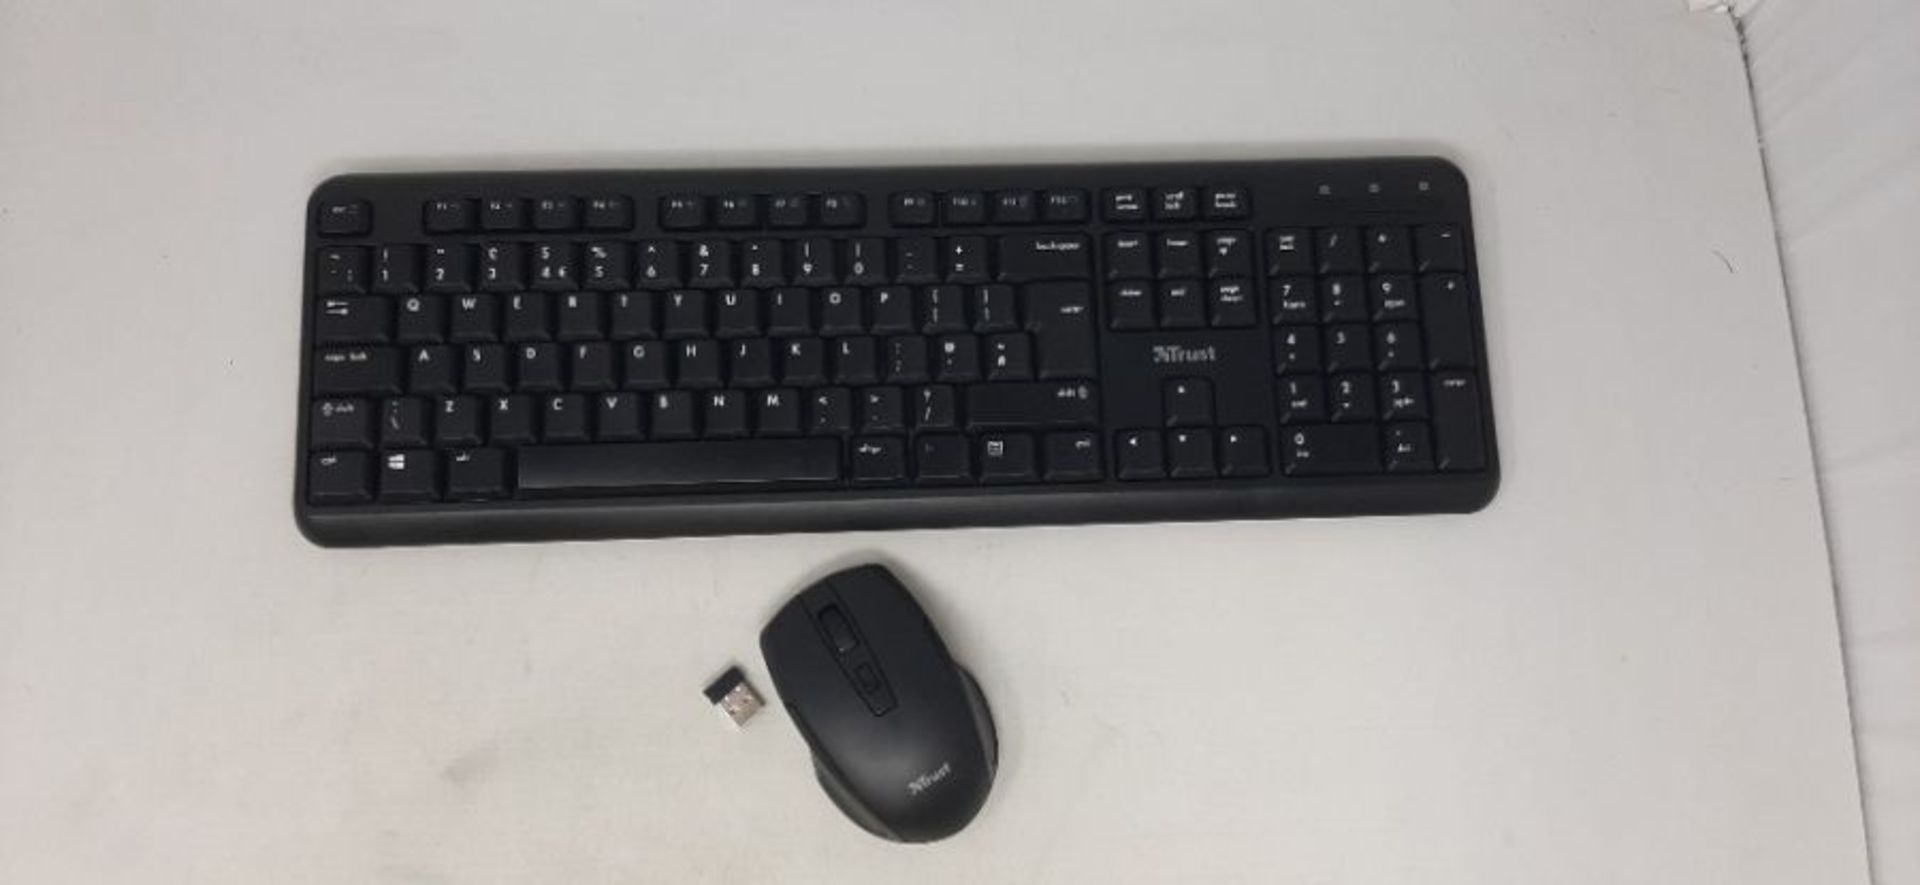 Trust Ymo Wireless Keyboard and Mouse Set -Qwerty UK Layout, Silent Keys, Full-Size Ke - Image 3 of 3